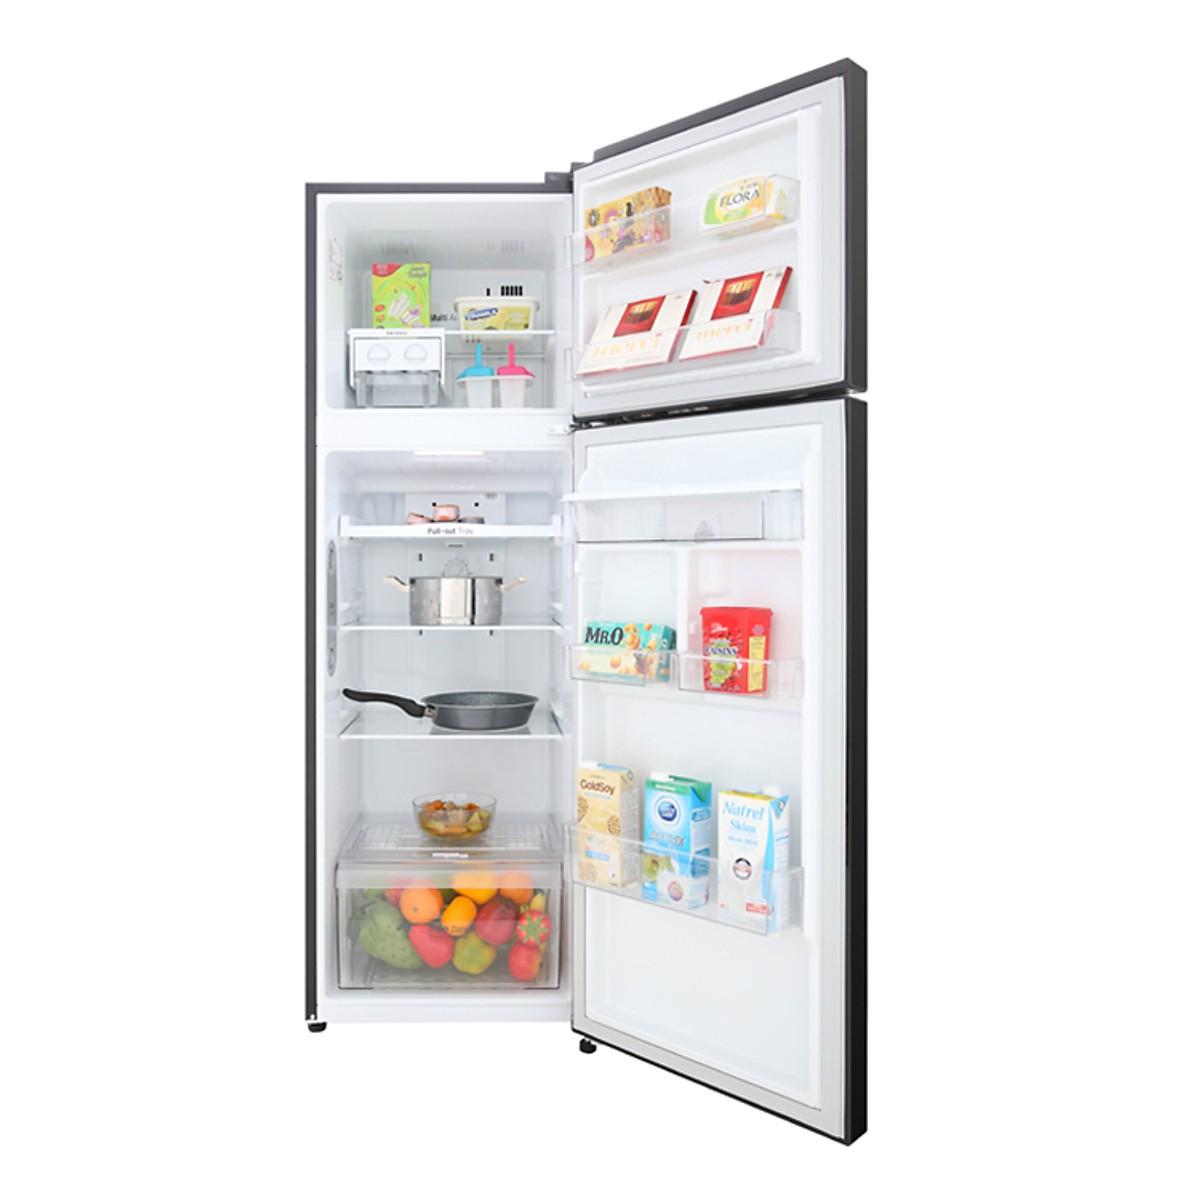 TRẢ GÓP 0% - Tủ lạnh LG GN-D255BL, 255 lít, Inverter - BẢO HÀNH 2 NĂM